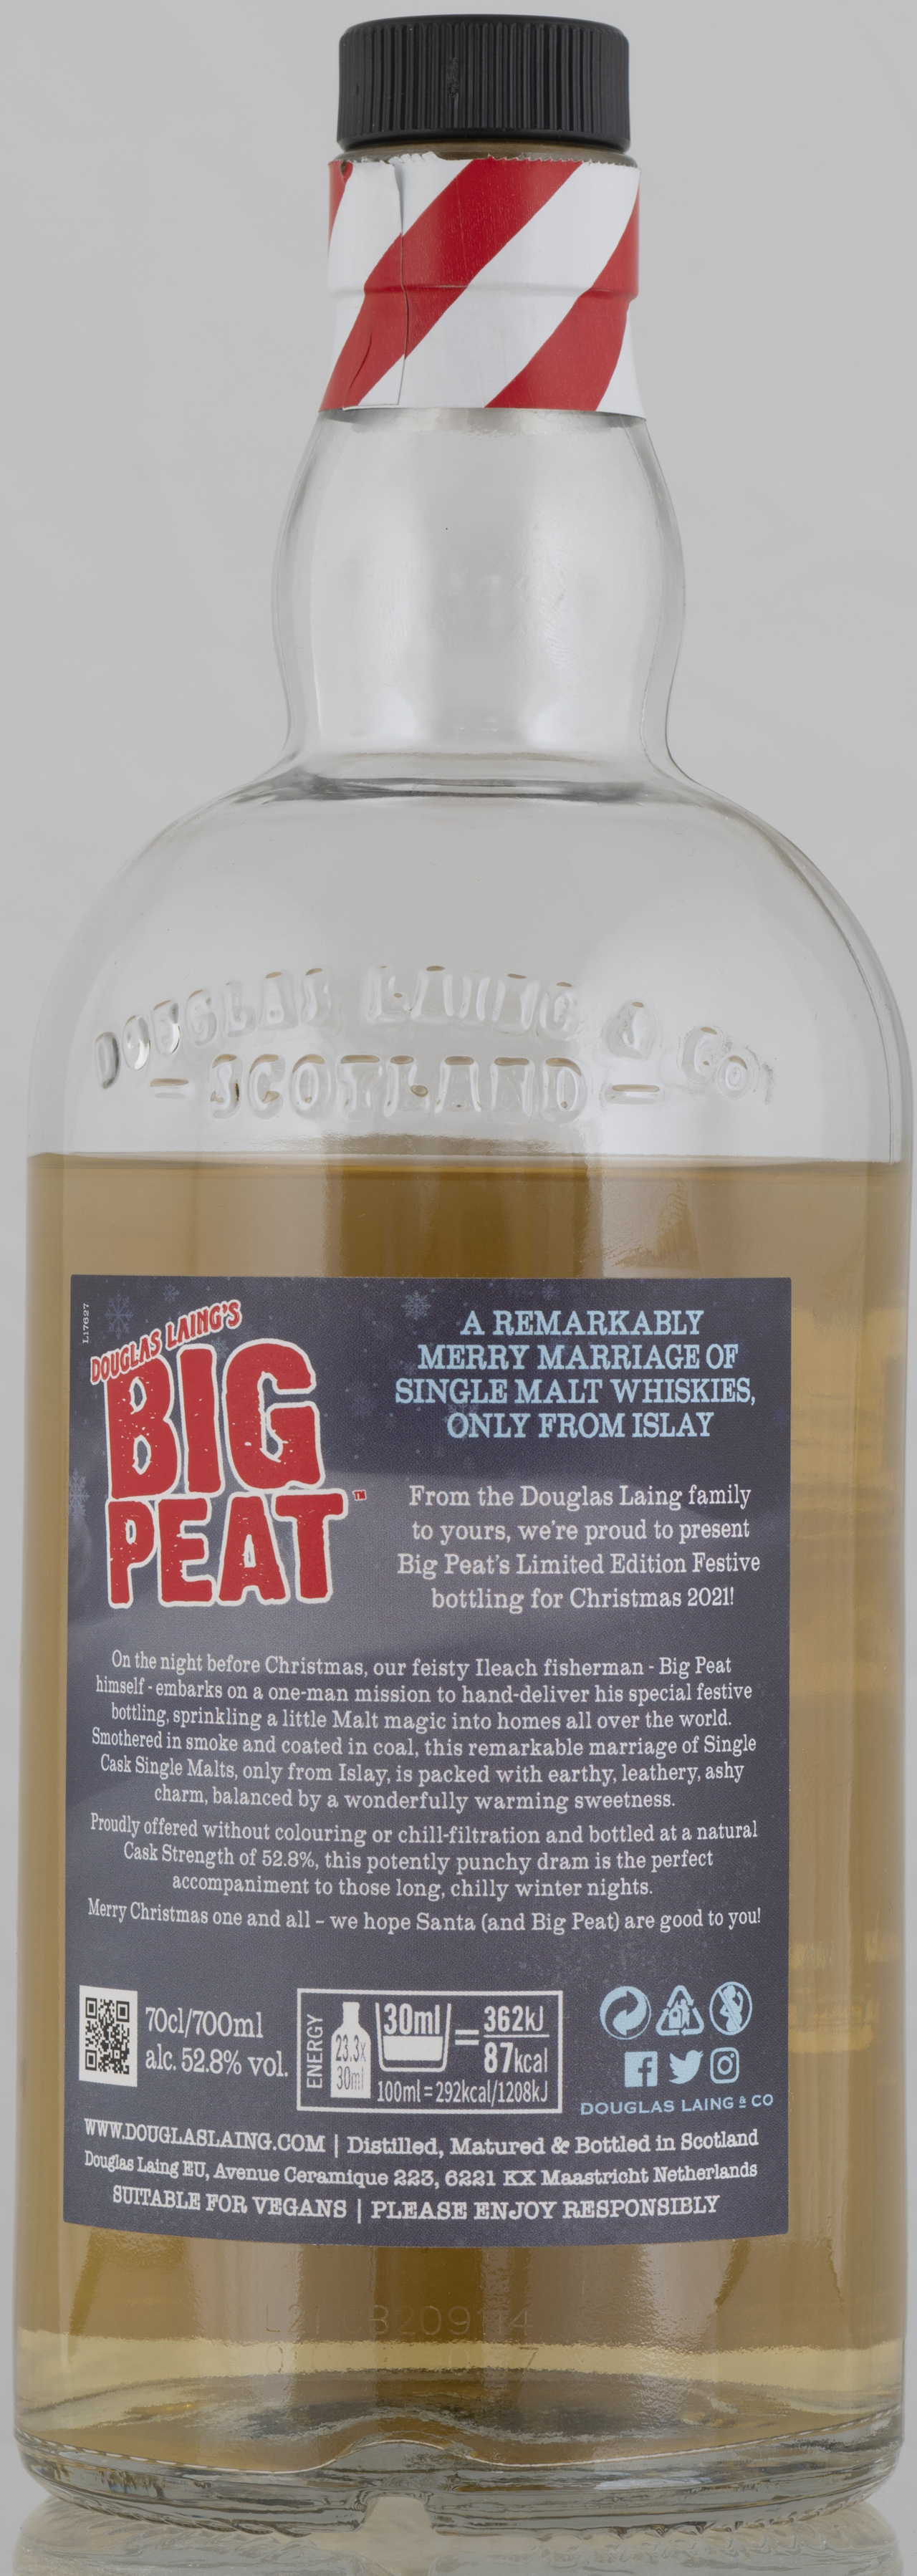 Billede: PHC_7254 - Big Peat Christmas Edition - bottle back.jpg